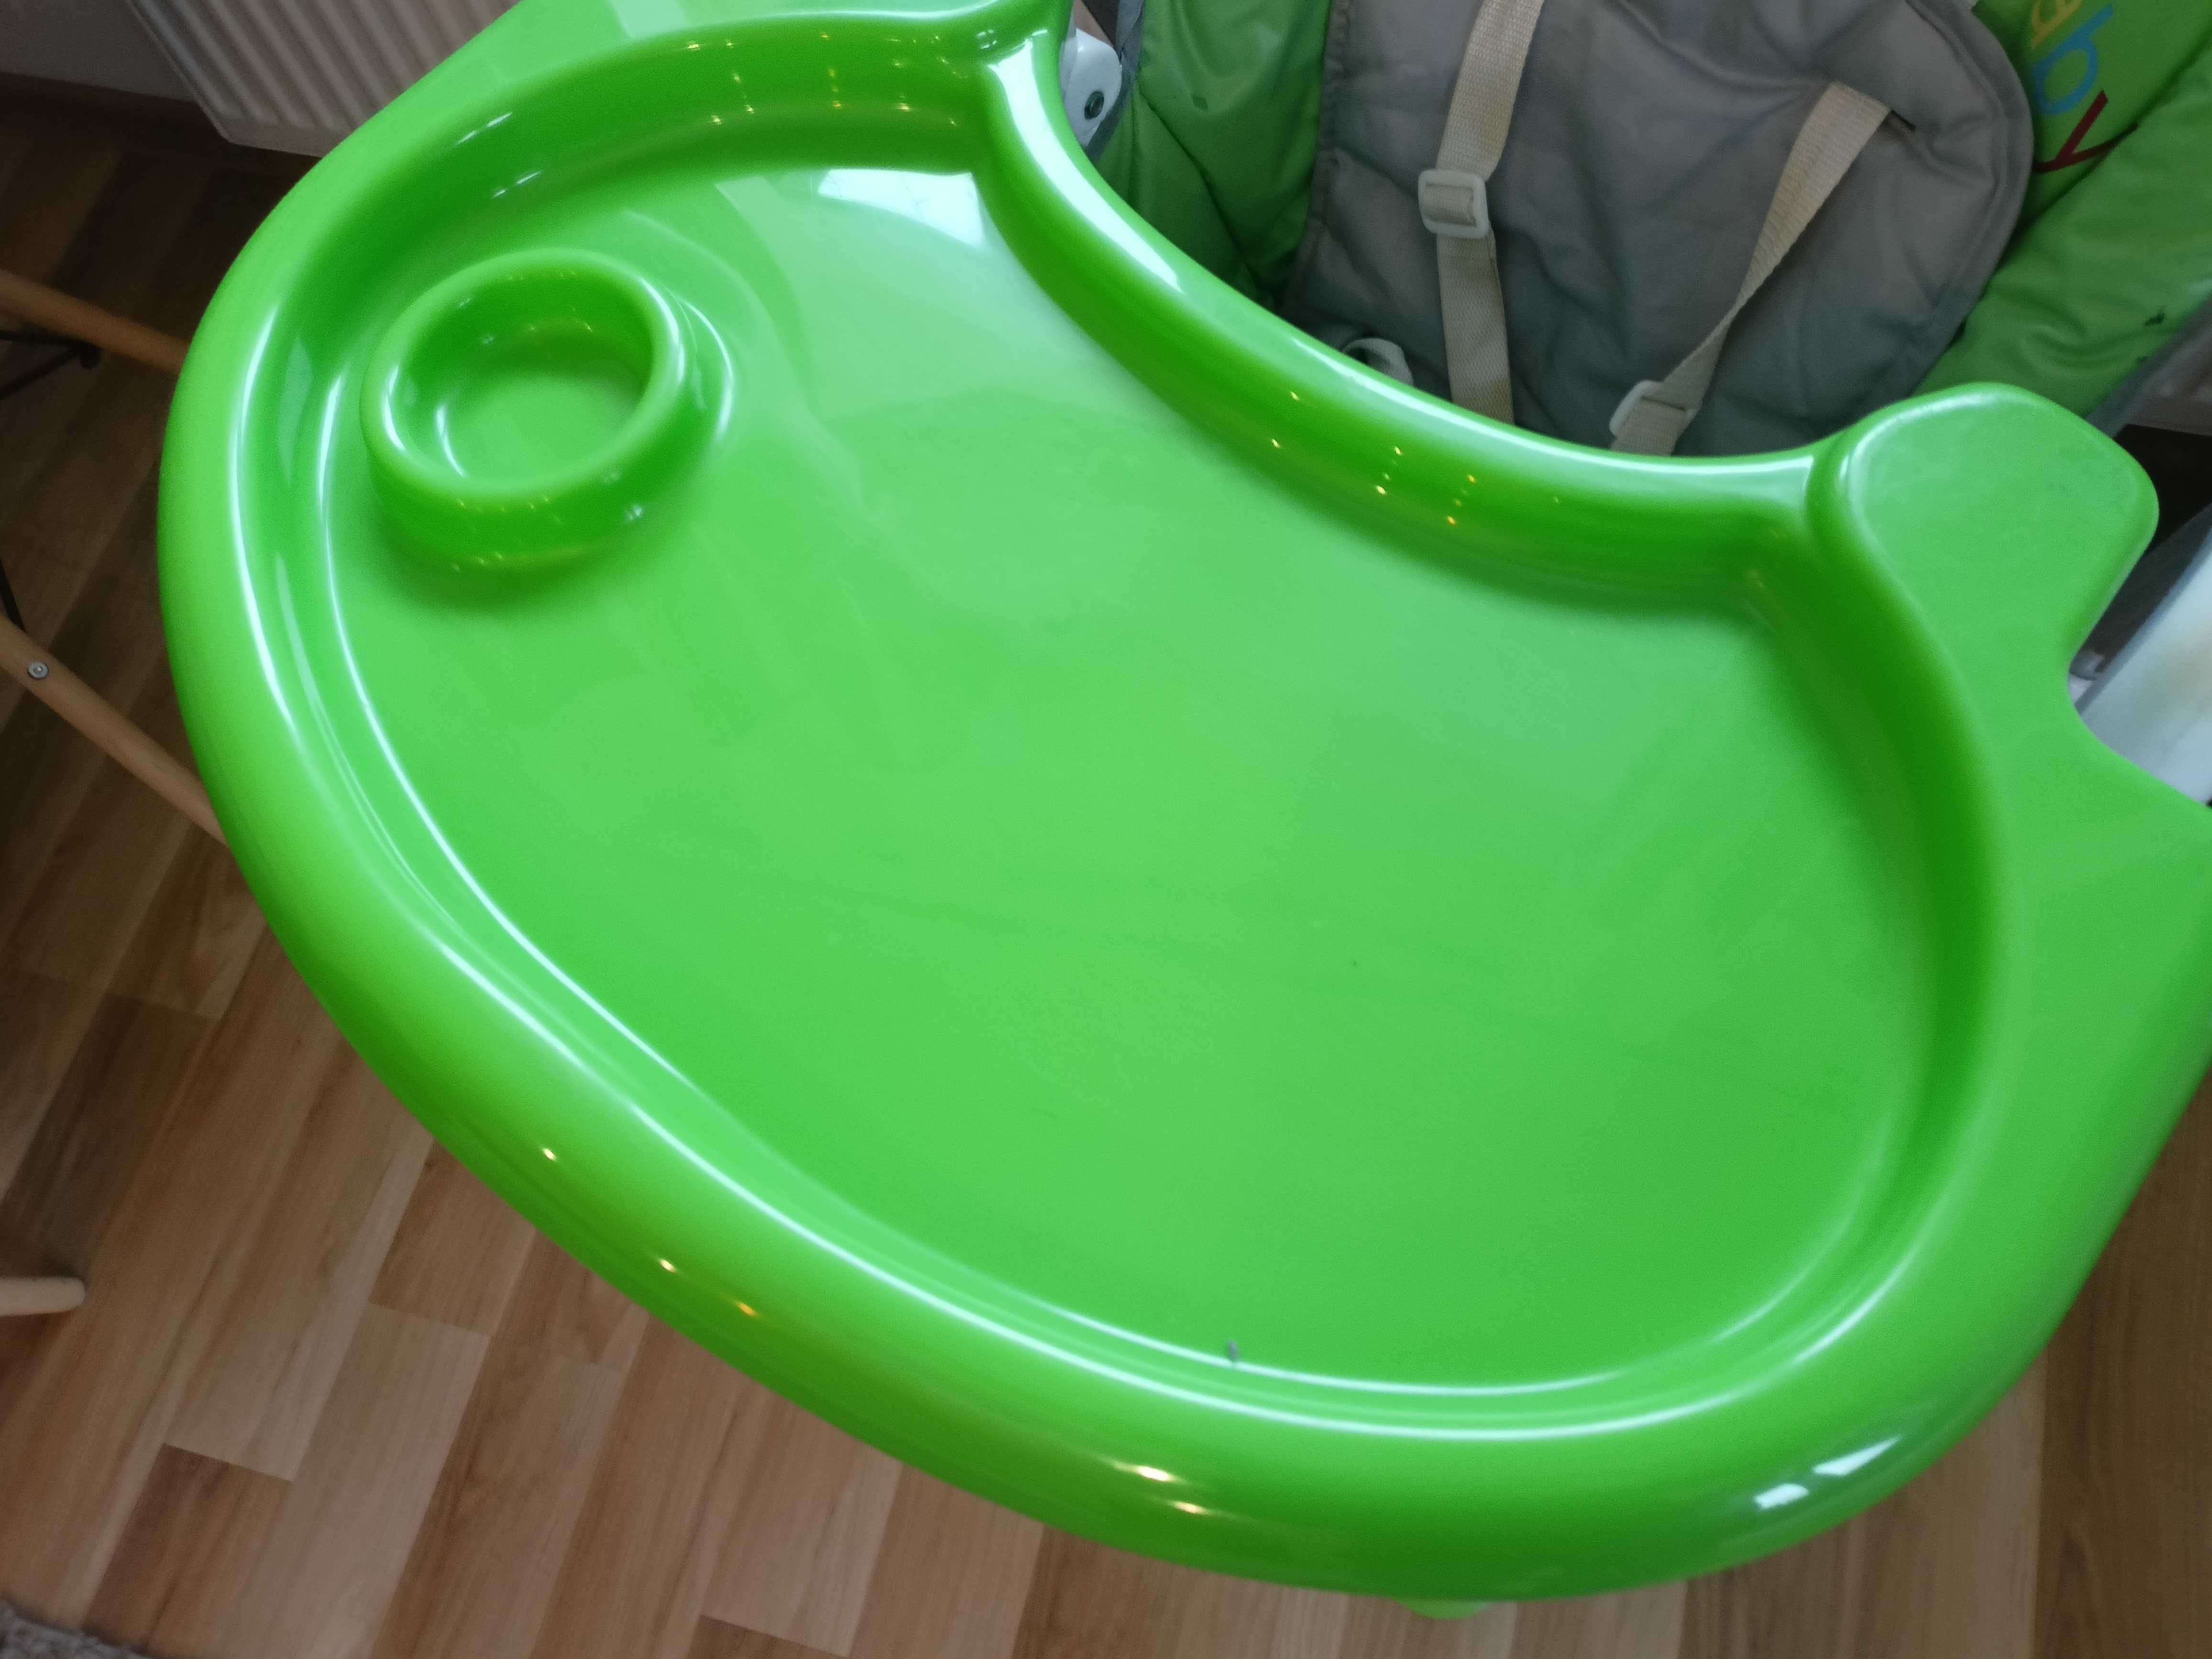 Krzesełko do karmienia dziecka zielone